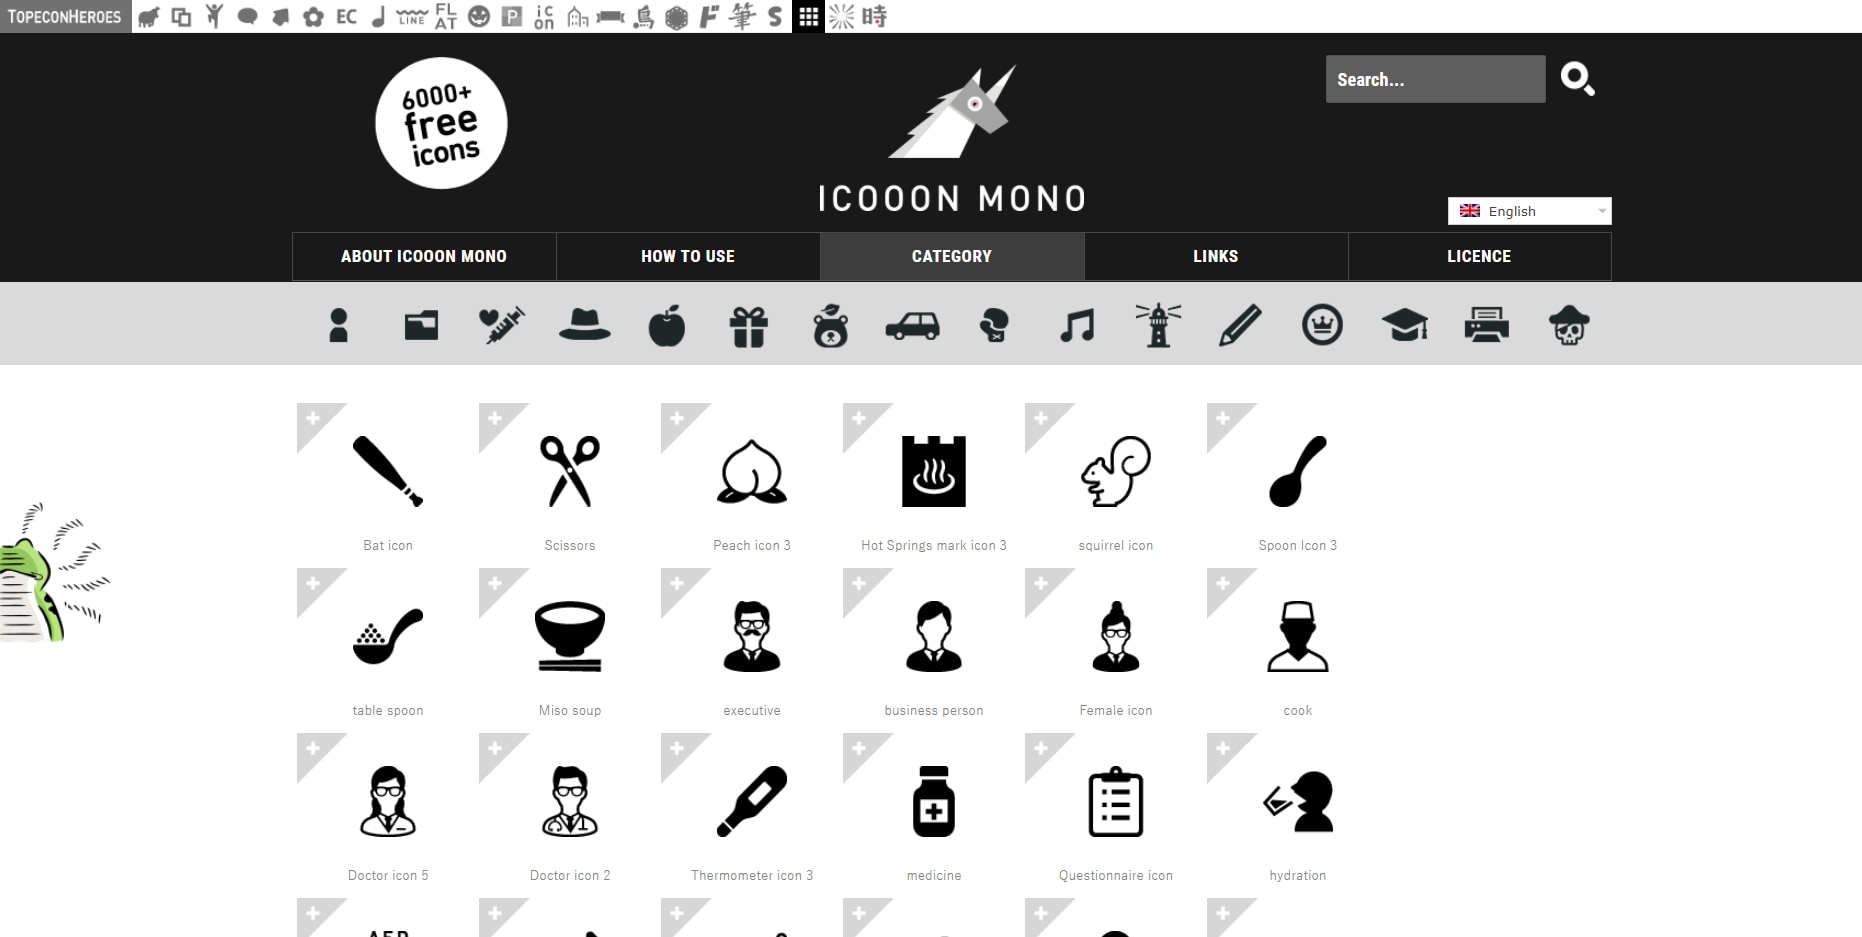 Icooon Mono